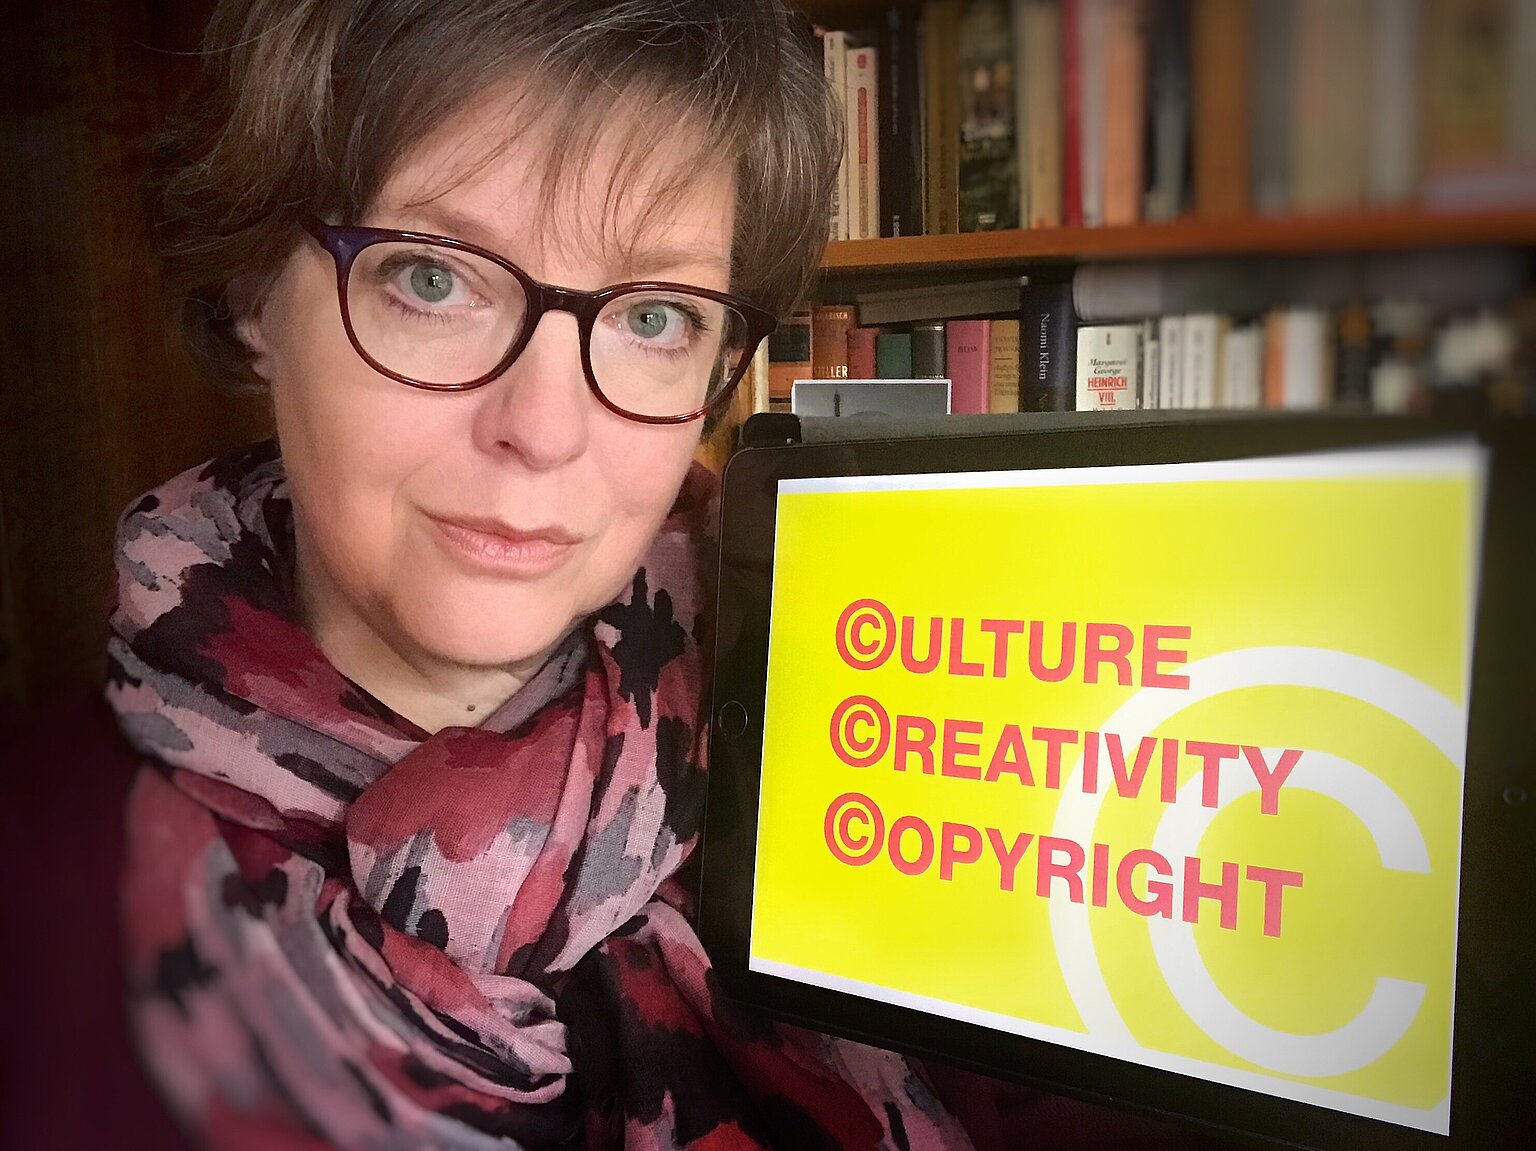  – Für das Urheberrecht wirbt die Fotojournalistin Heike Rost. Foto (Selfie): Heike Rost